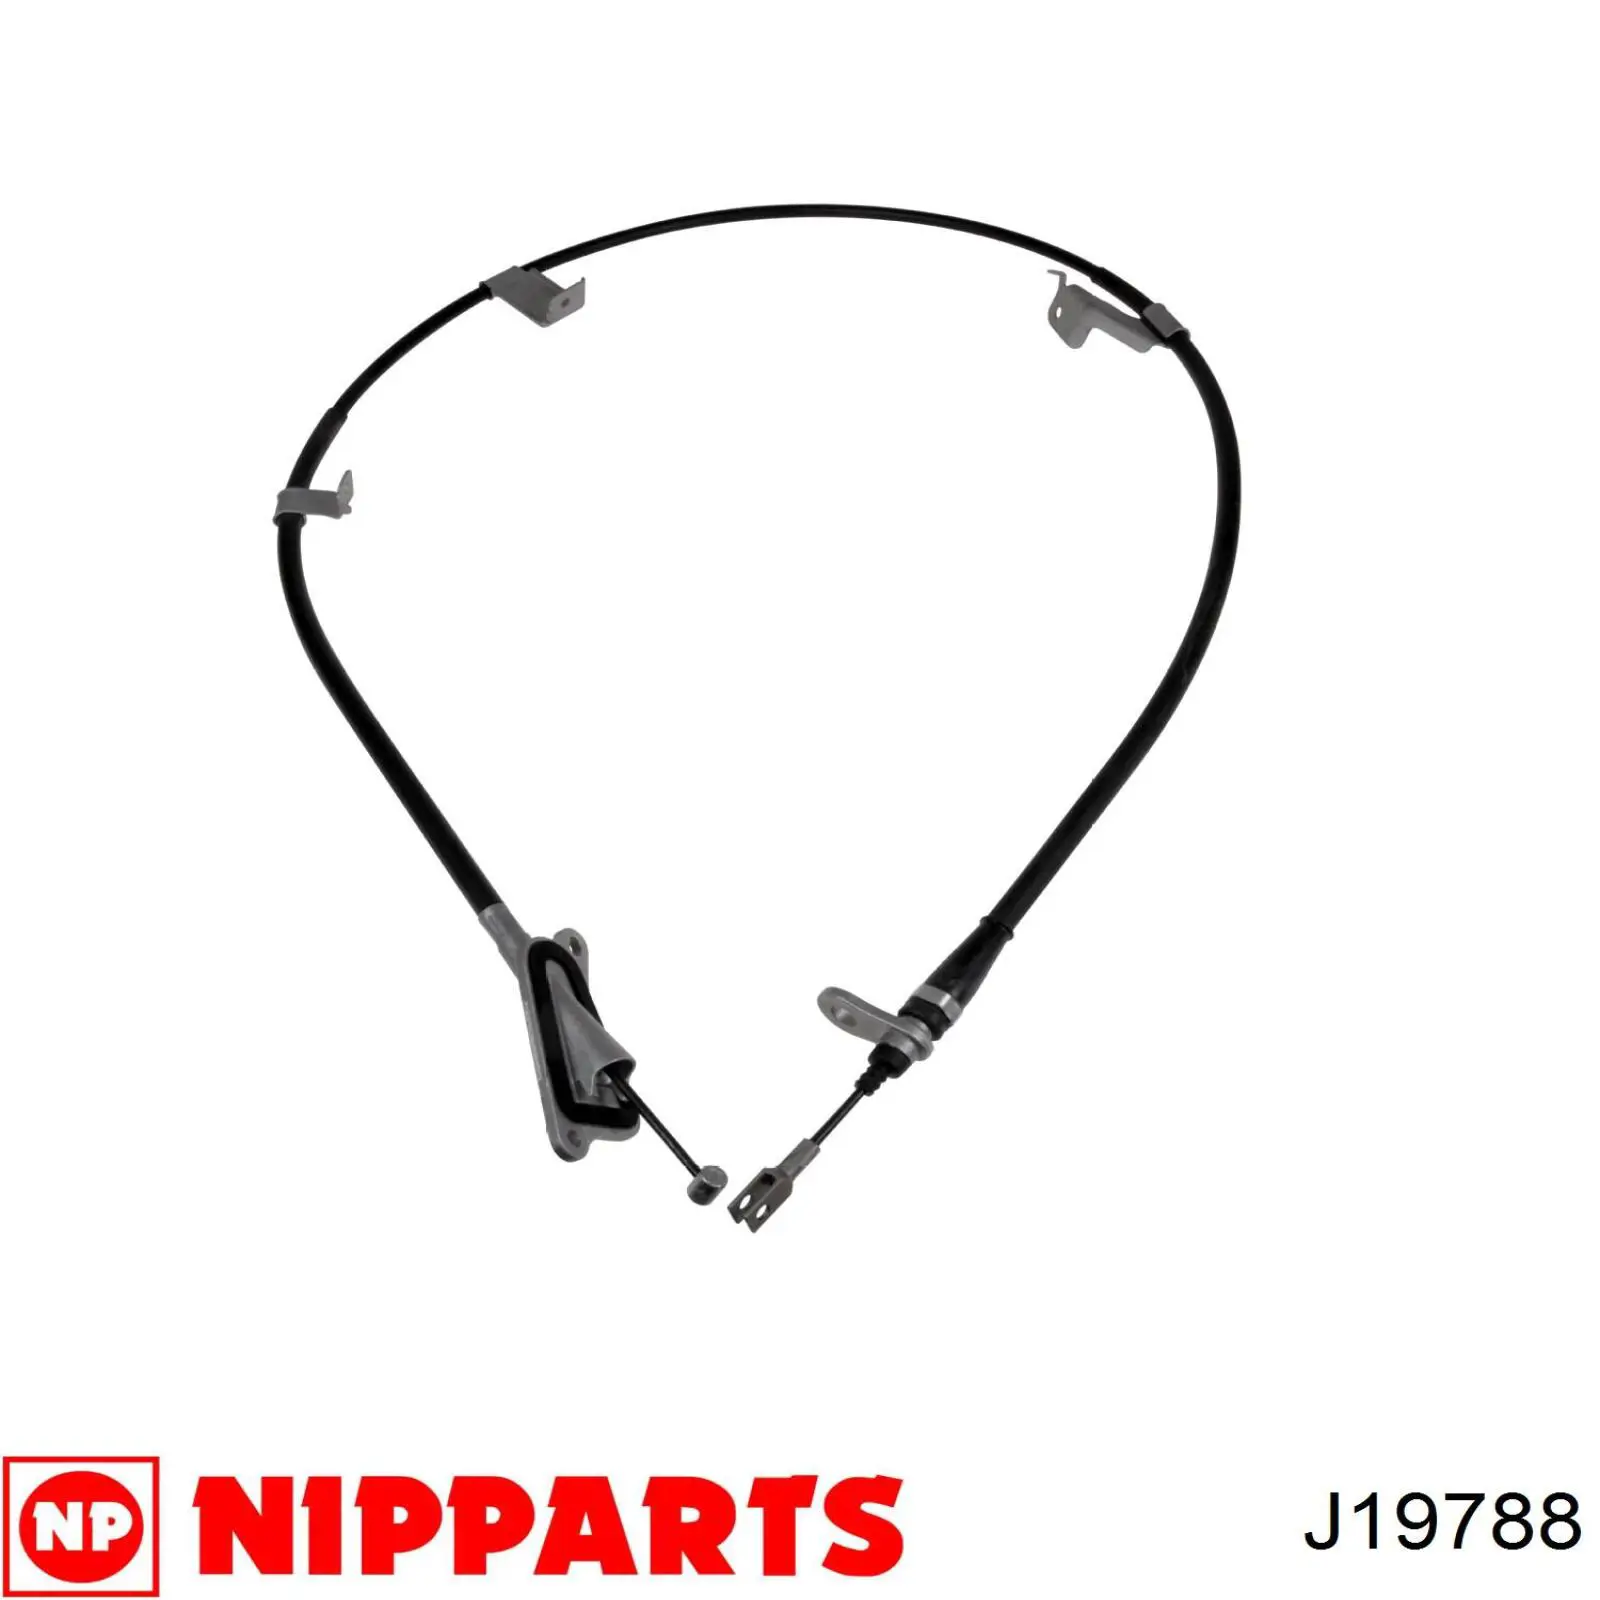 Cable de freno de mano trasero derecho J19788 Nipparts